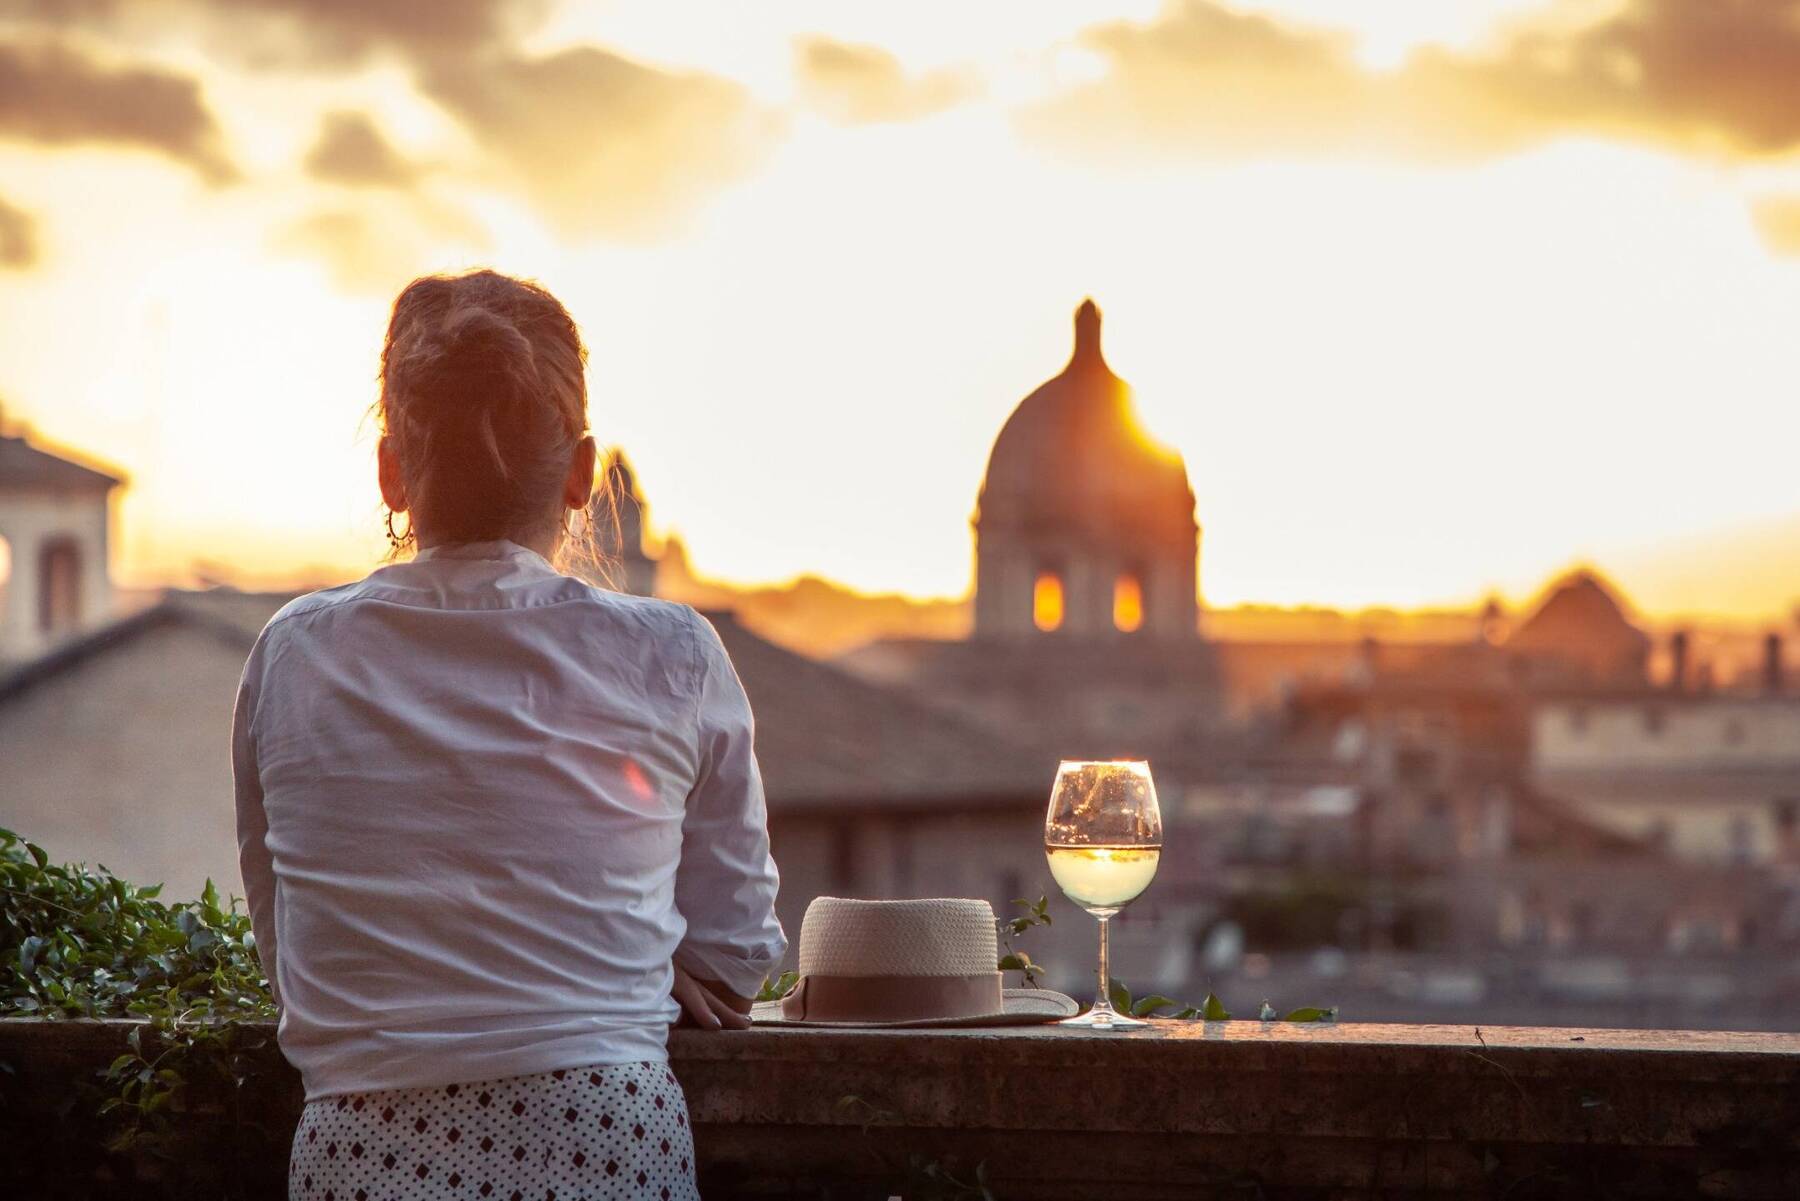 Rome: 3 secret bars for natural wine lovers